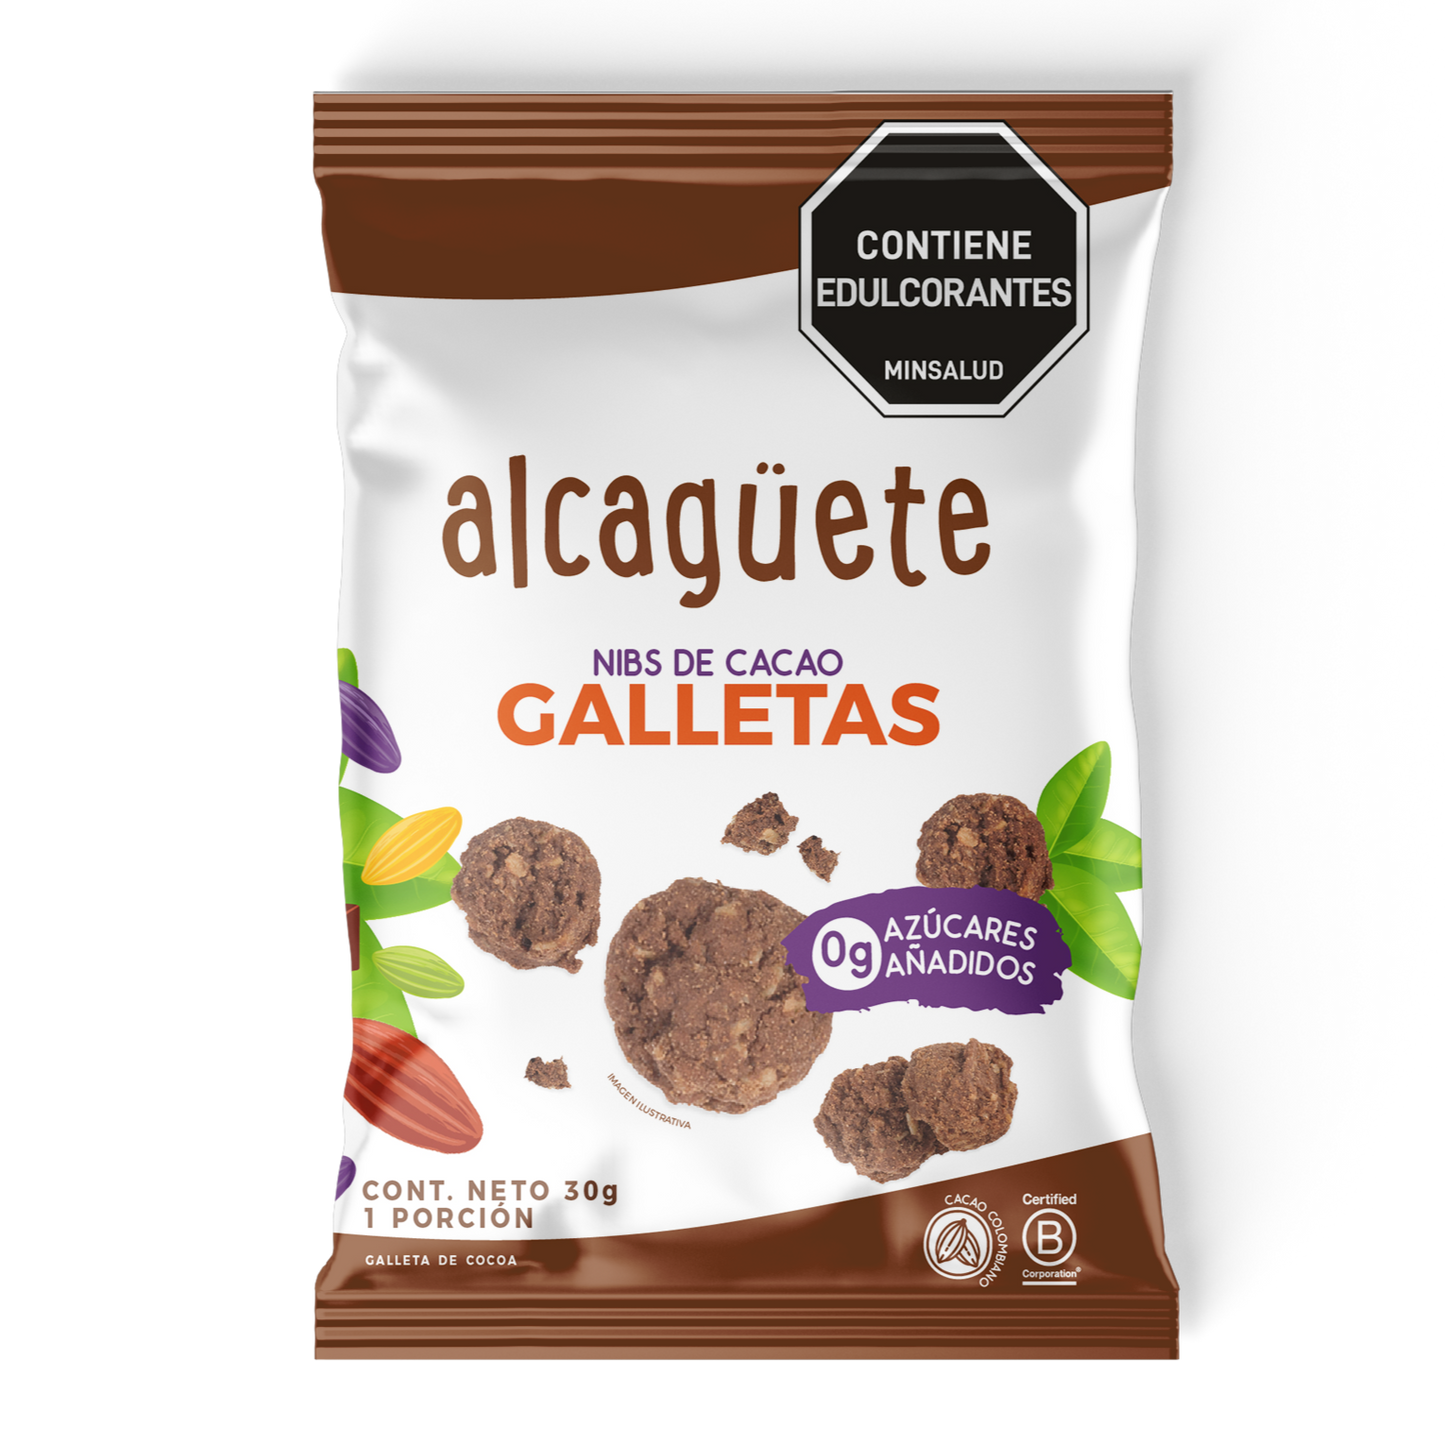 5 Pack Galletas Nibs de Cacao